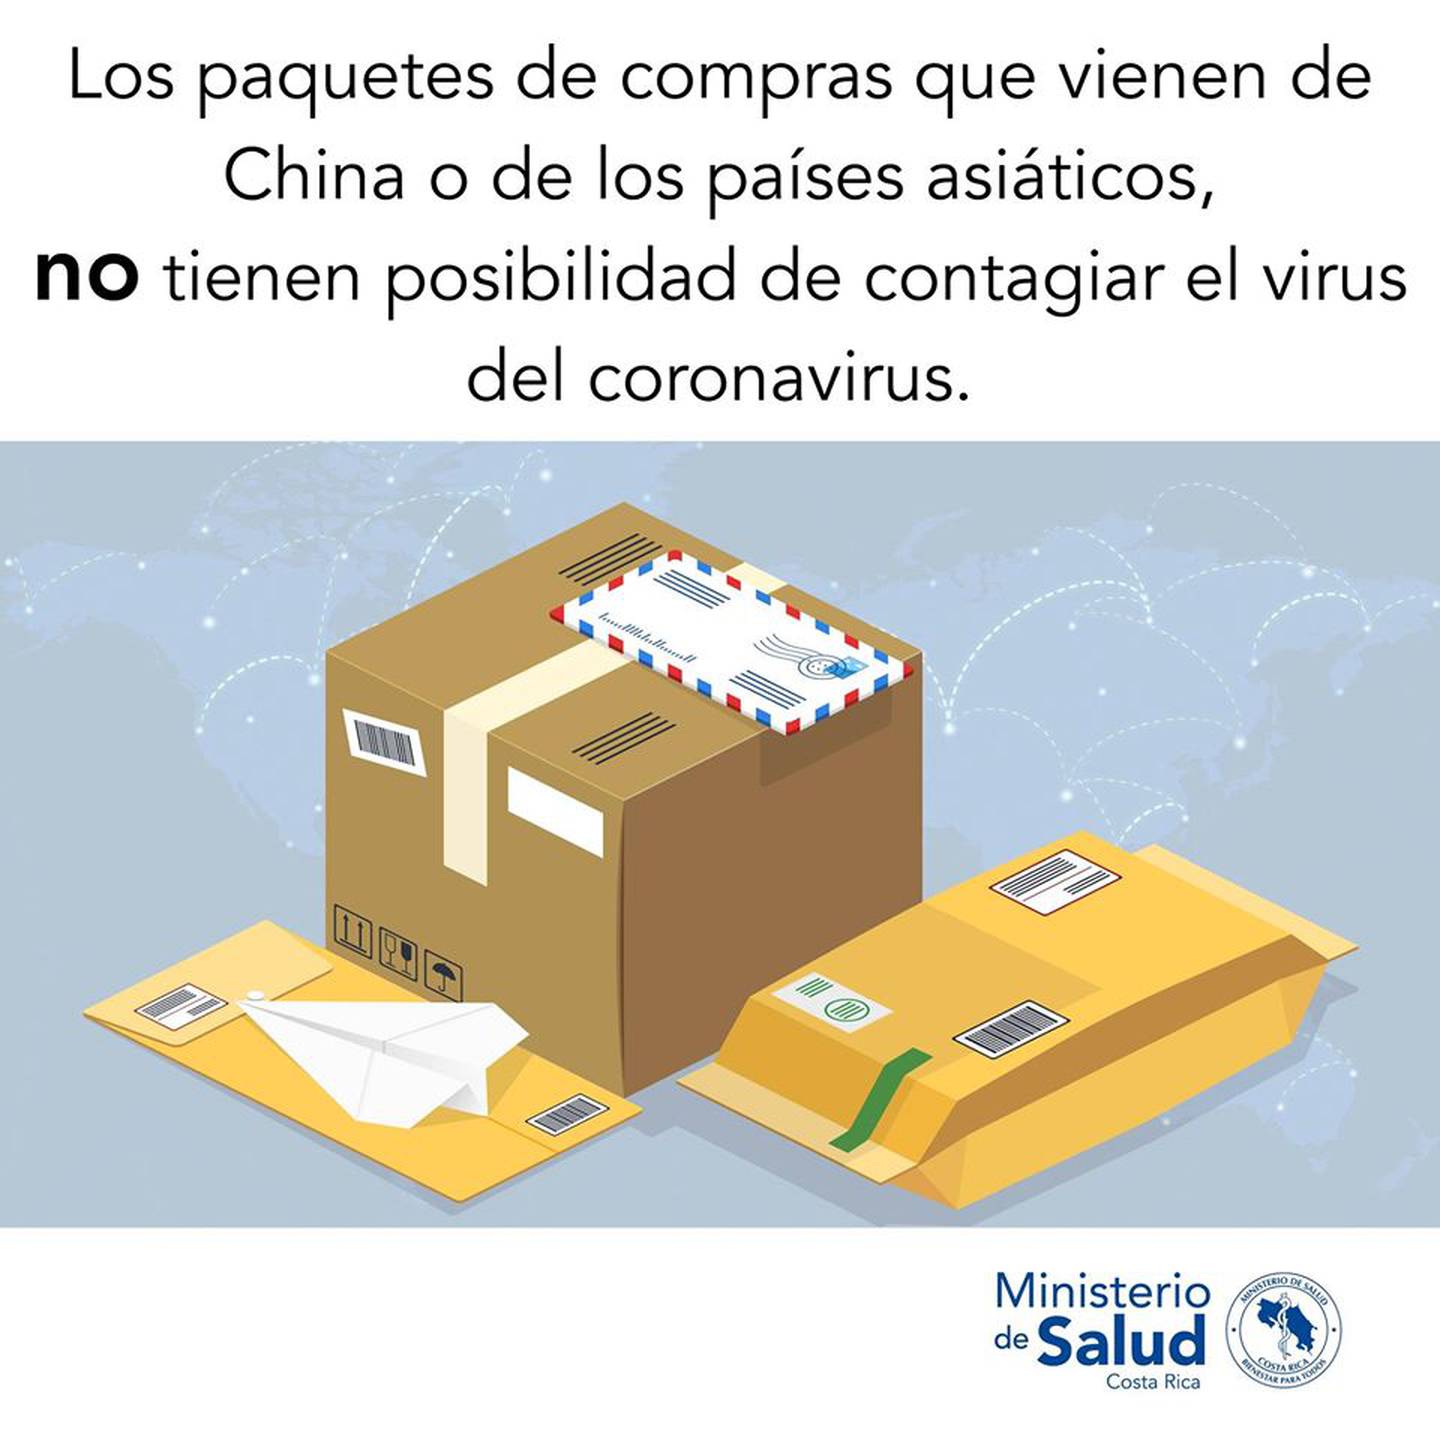 El ministerio de Salud garantiza que los paquetes provenientes de China no contagian coronavirus